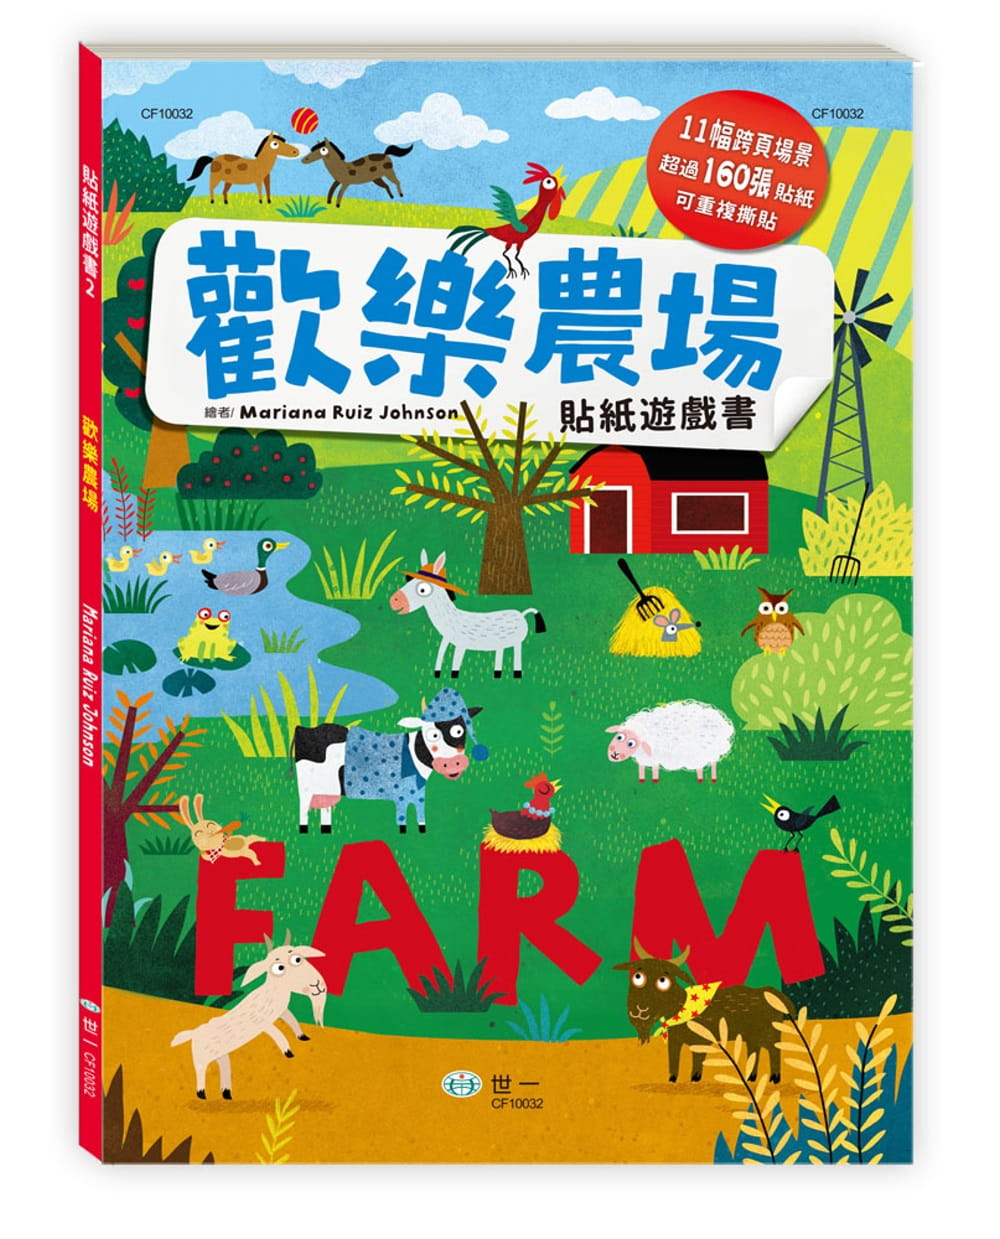 歡樂農場貼紙遊戲書